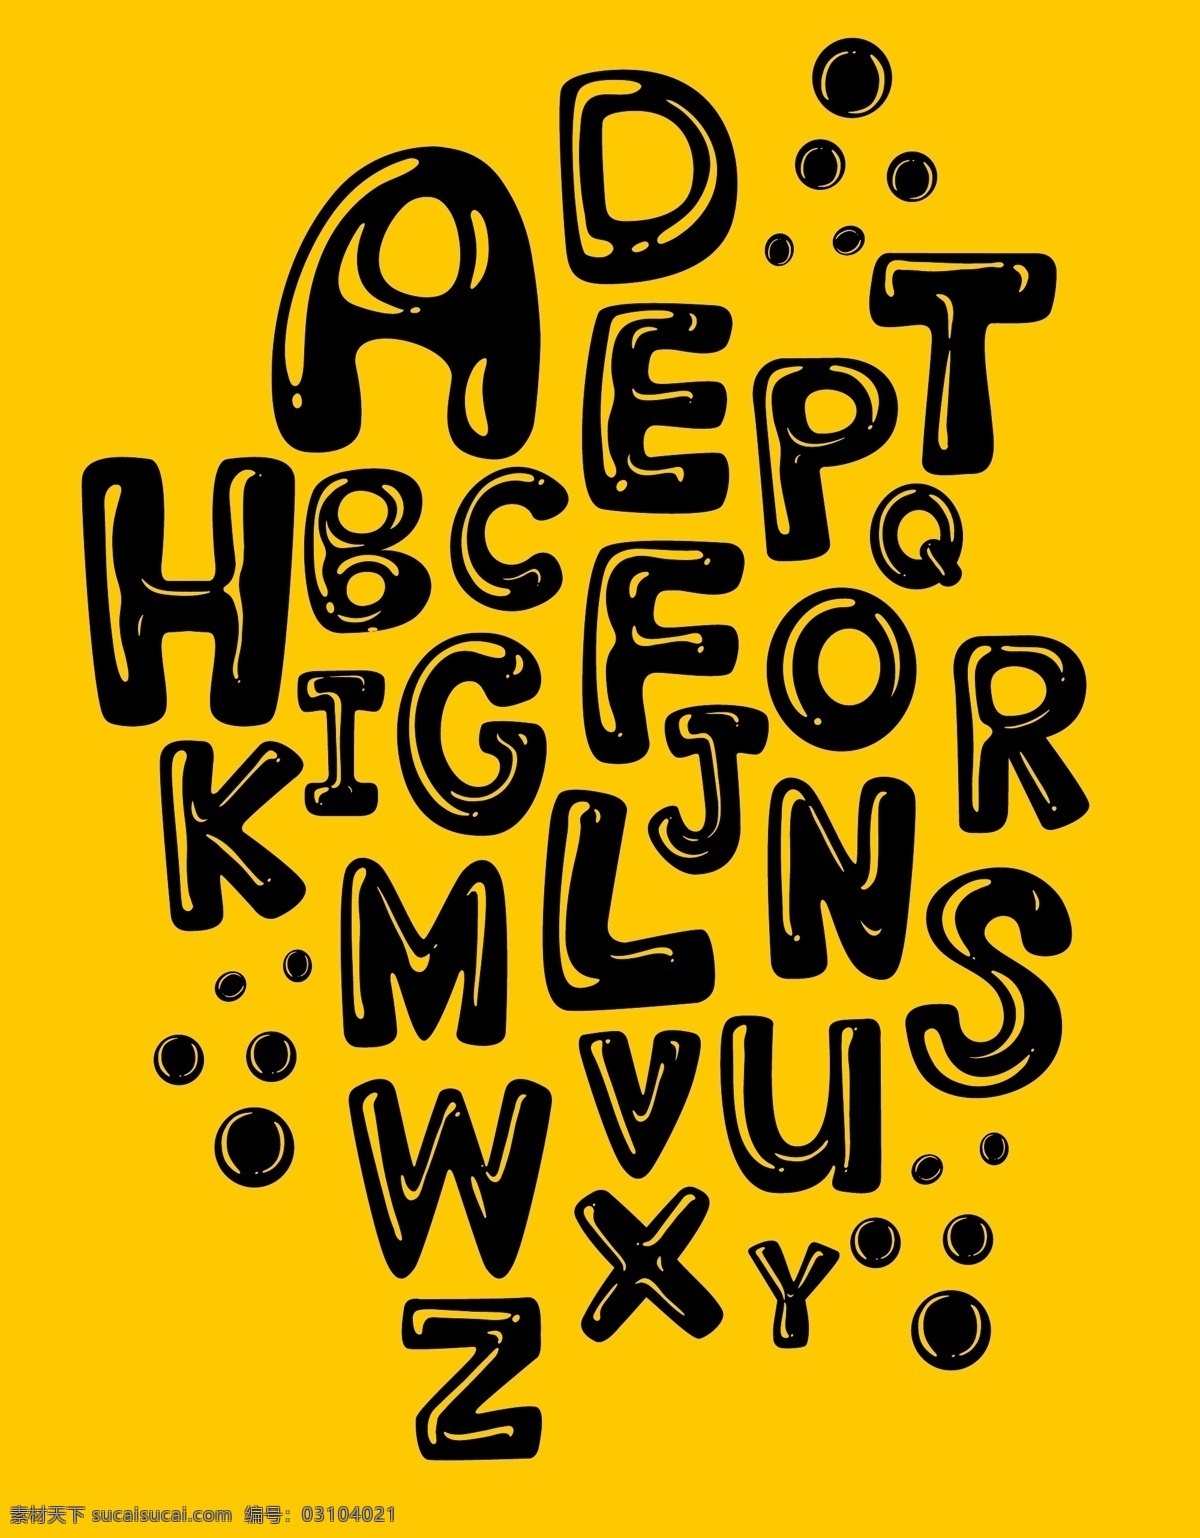 卡通字母 26个字母 手绘字母 矢量字母 字母插画 可爱字母 活泼字母 创意字母 艺术字母 简洁字母 简约字母 现代字母 时尚字母 紫色渐变字母 对比色背景 对比色字母 手写字母 黑色字母 彩色字母 图案字母 儿童字母 质感字母 高光字母 数字字母 标志图标 其他图标